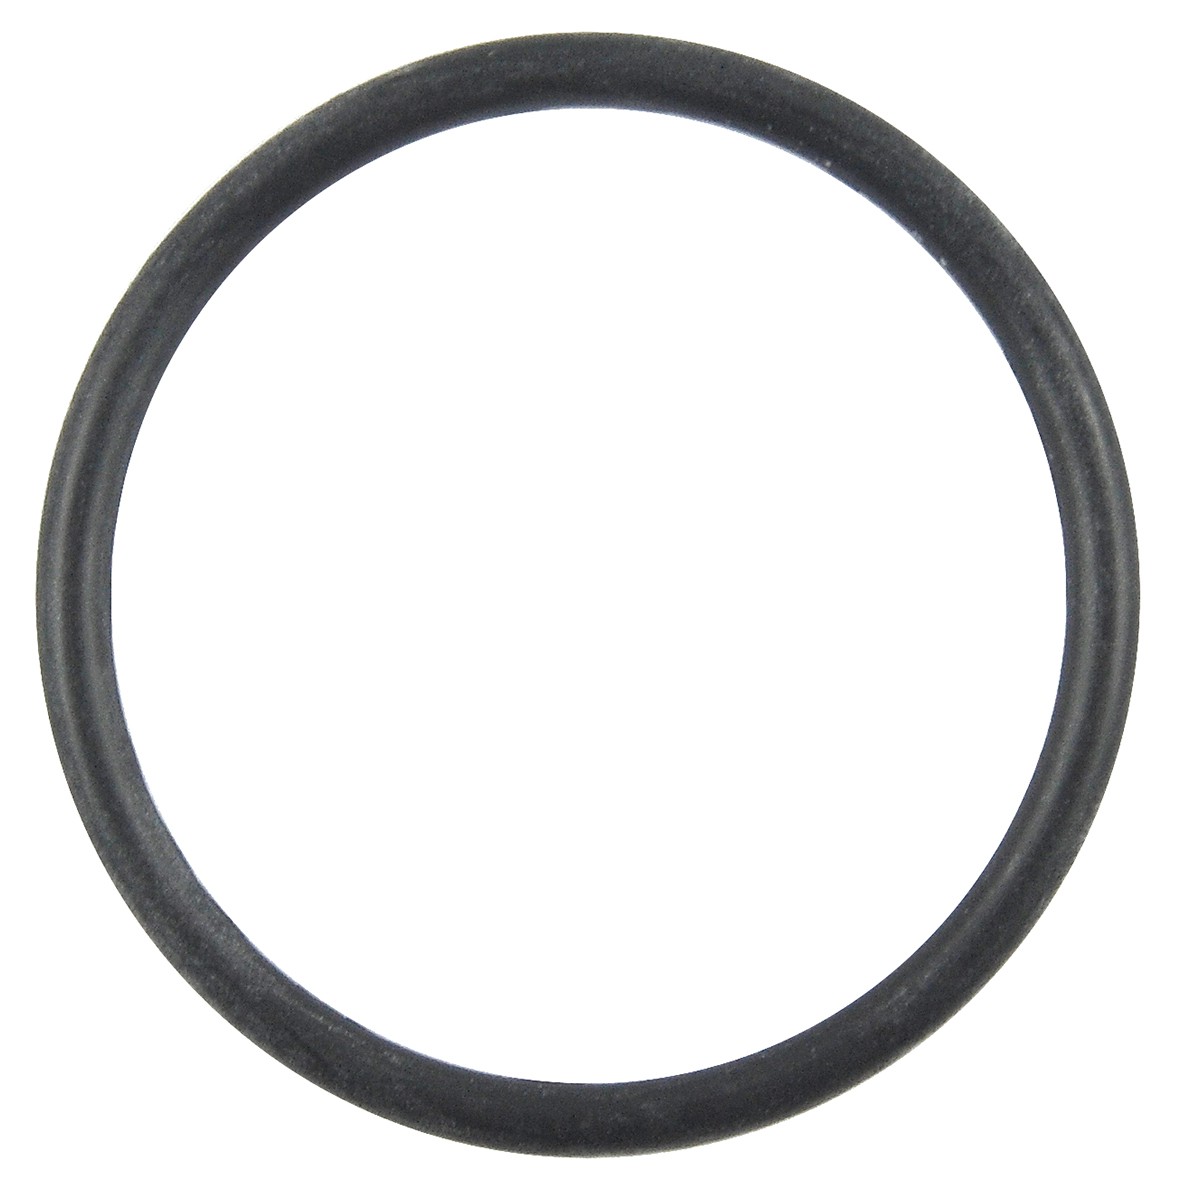 O-Ring / 5.80 x 78.80 m / Kubota L4508/L4708/L5018/M5000/M6040 / 3A111-09830 / 5-27-101-78